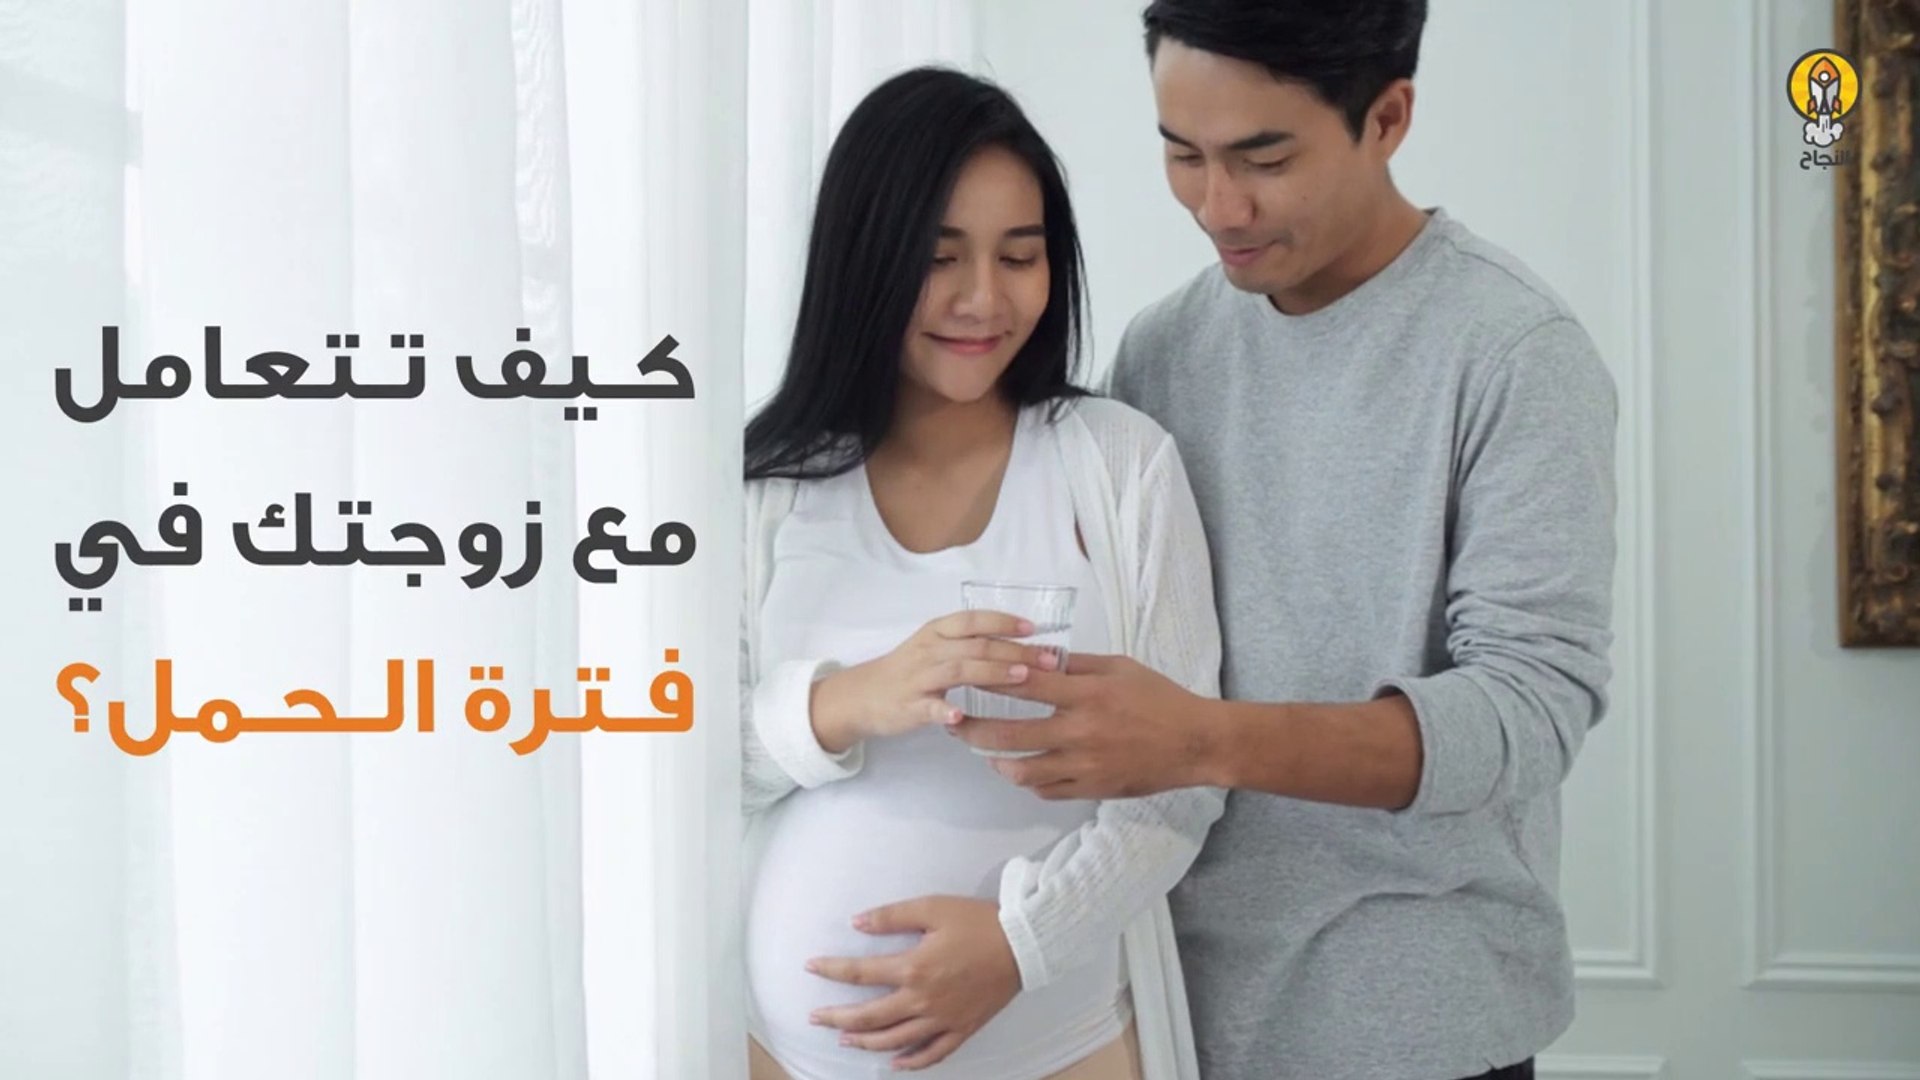 كيف تتعامل مع زوجتك في فترة الحمل؟ - فيديو Dailymotion